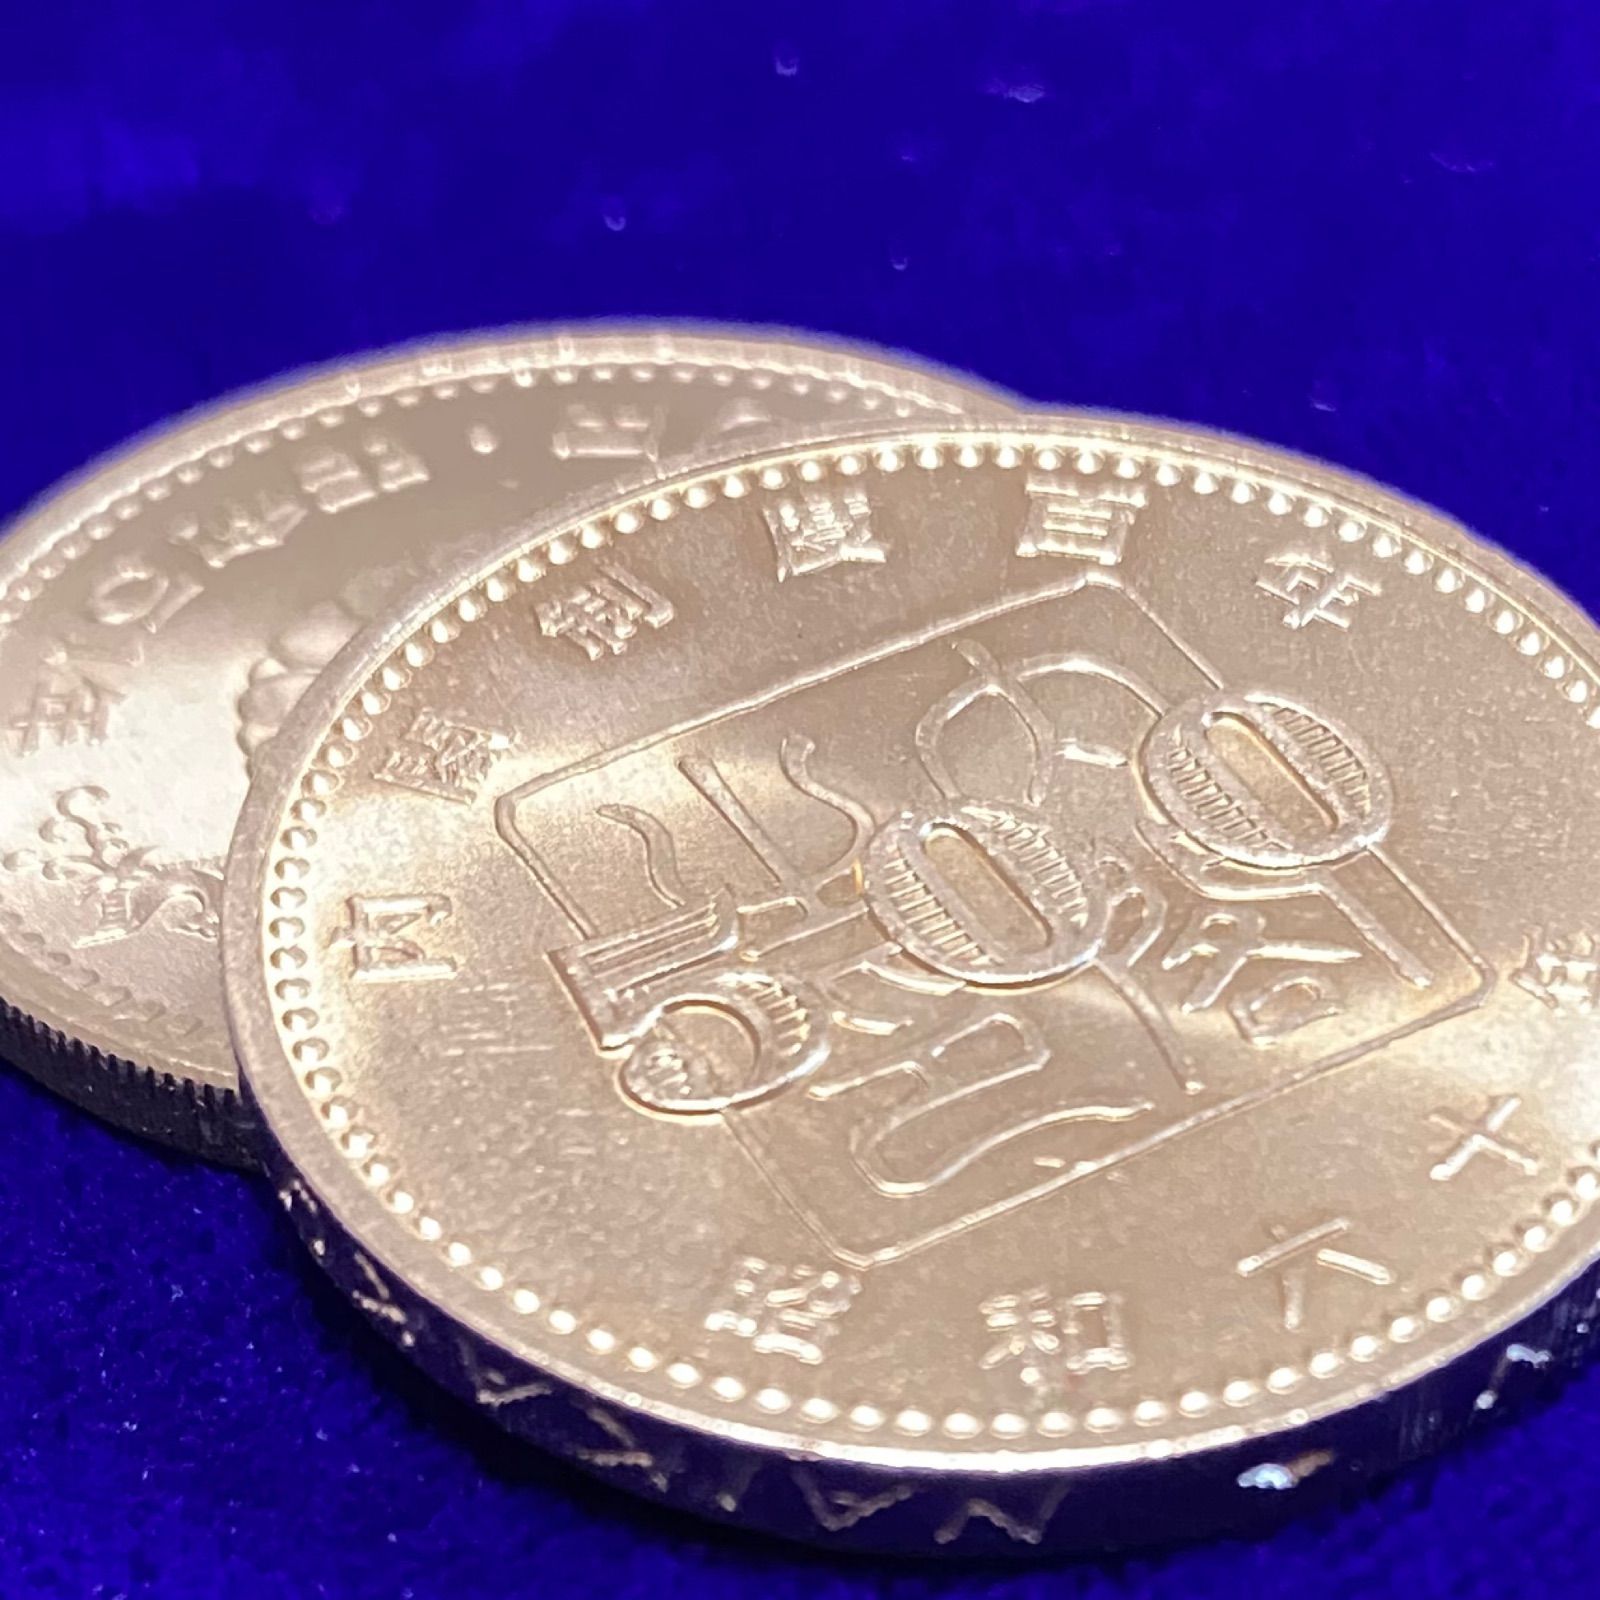 新発売の 昭和天皇御在位50年記念100円白銅貨 100円硬貨 記念硬貨 昭和51年